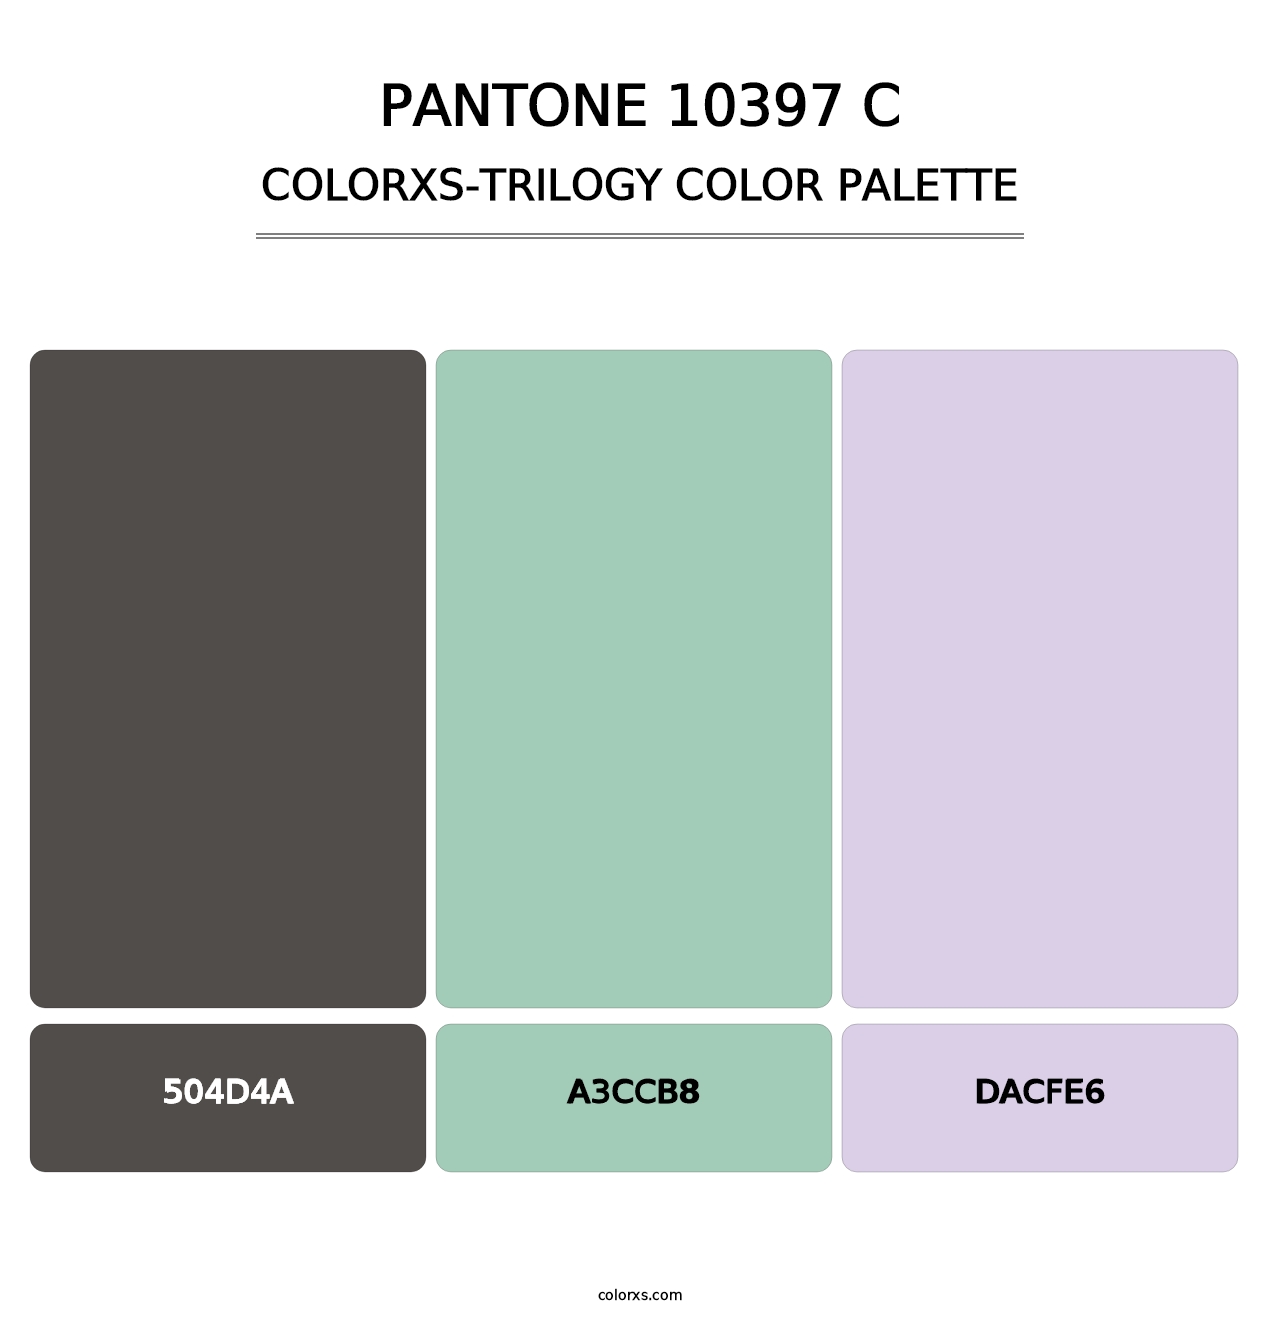 PANTONE 10397 C - Colorxs Trilogy Palette